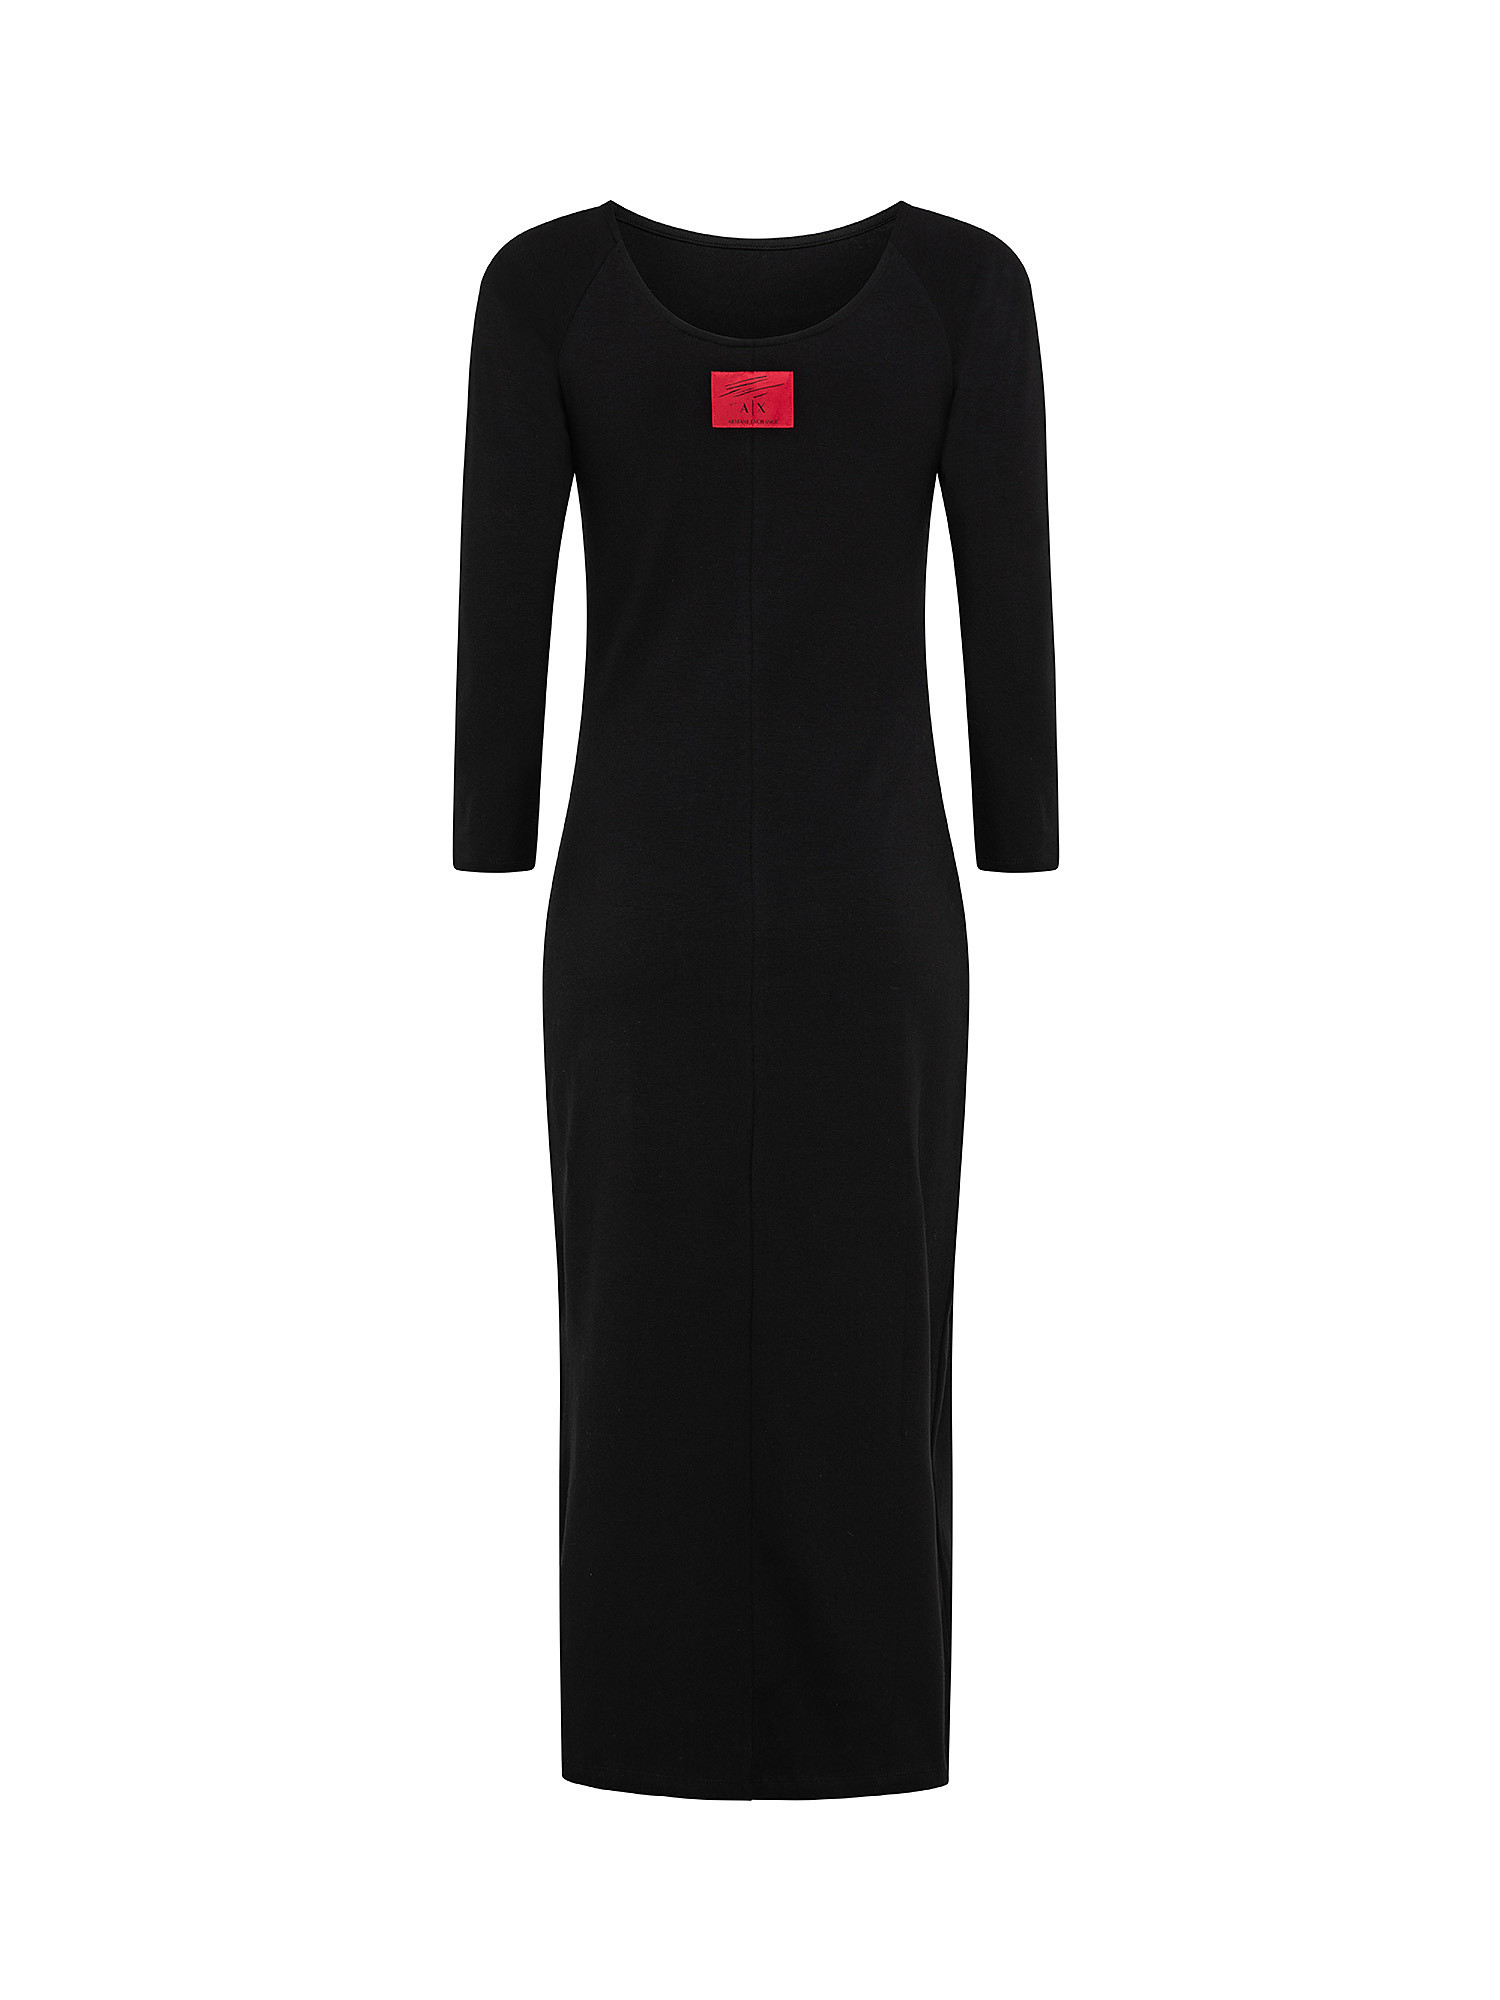 Long jersey dress, Black, large image number 1